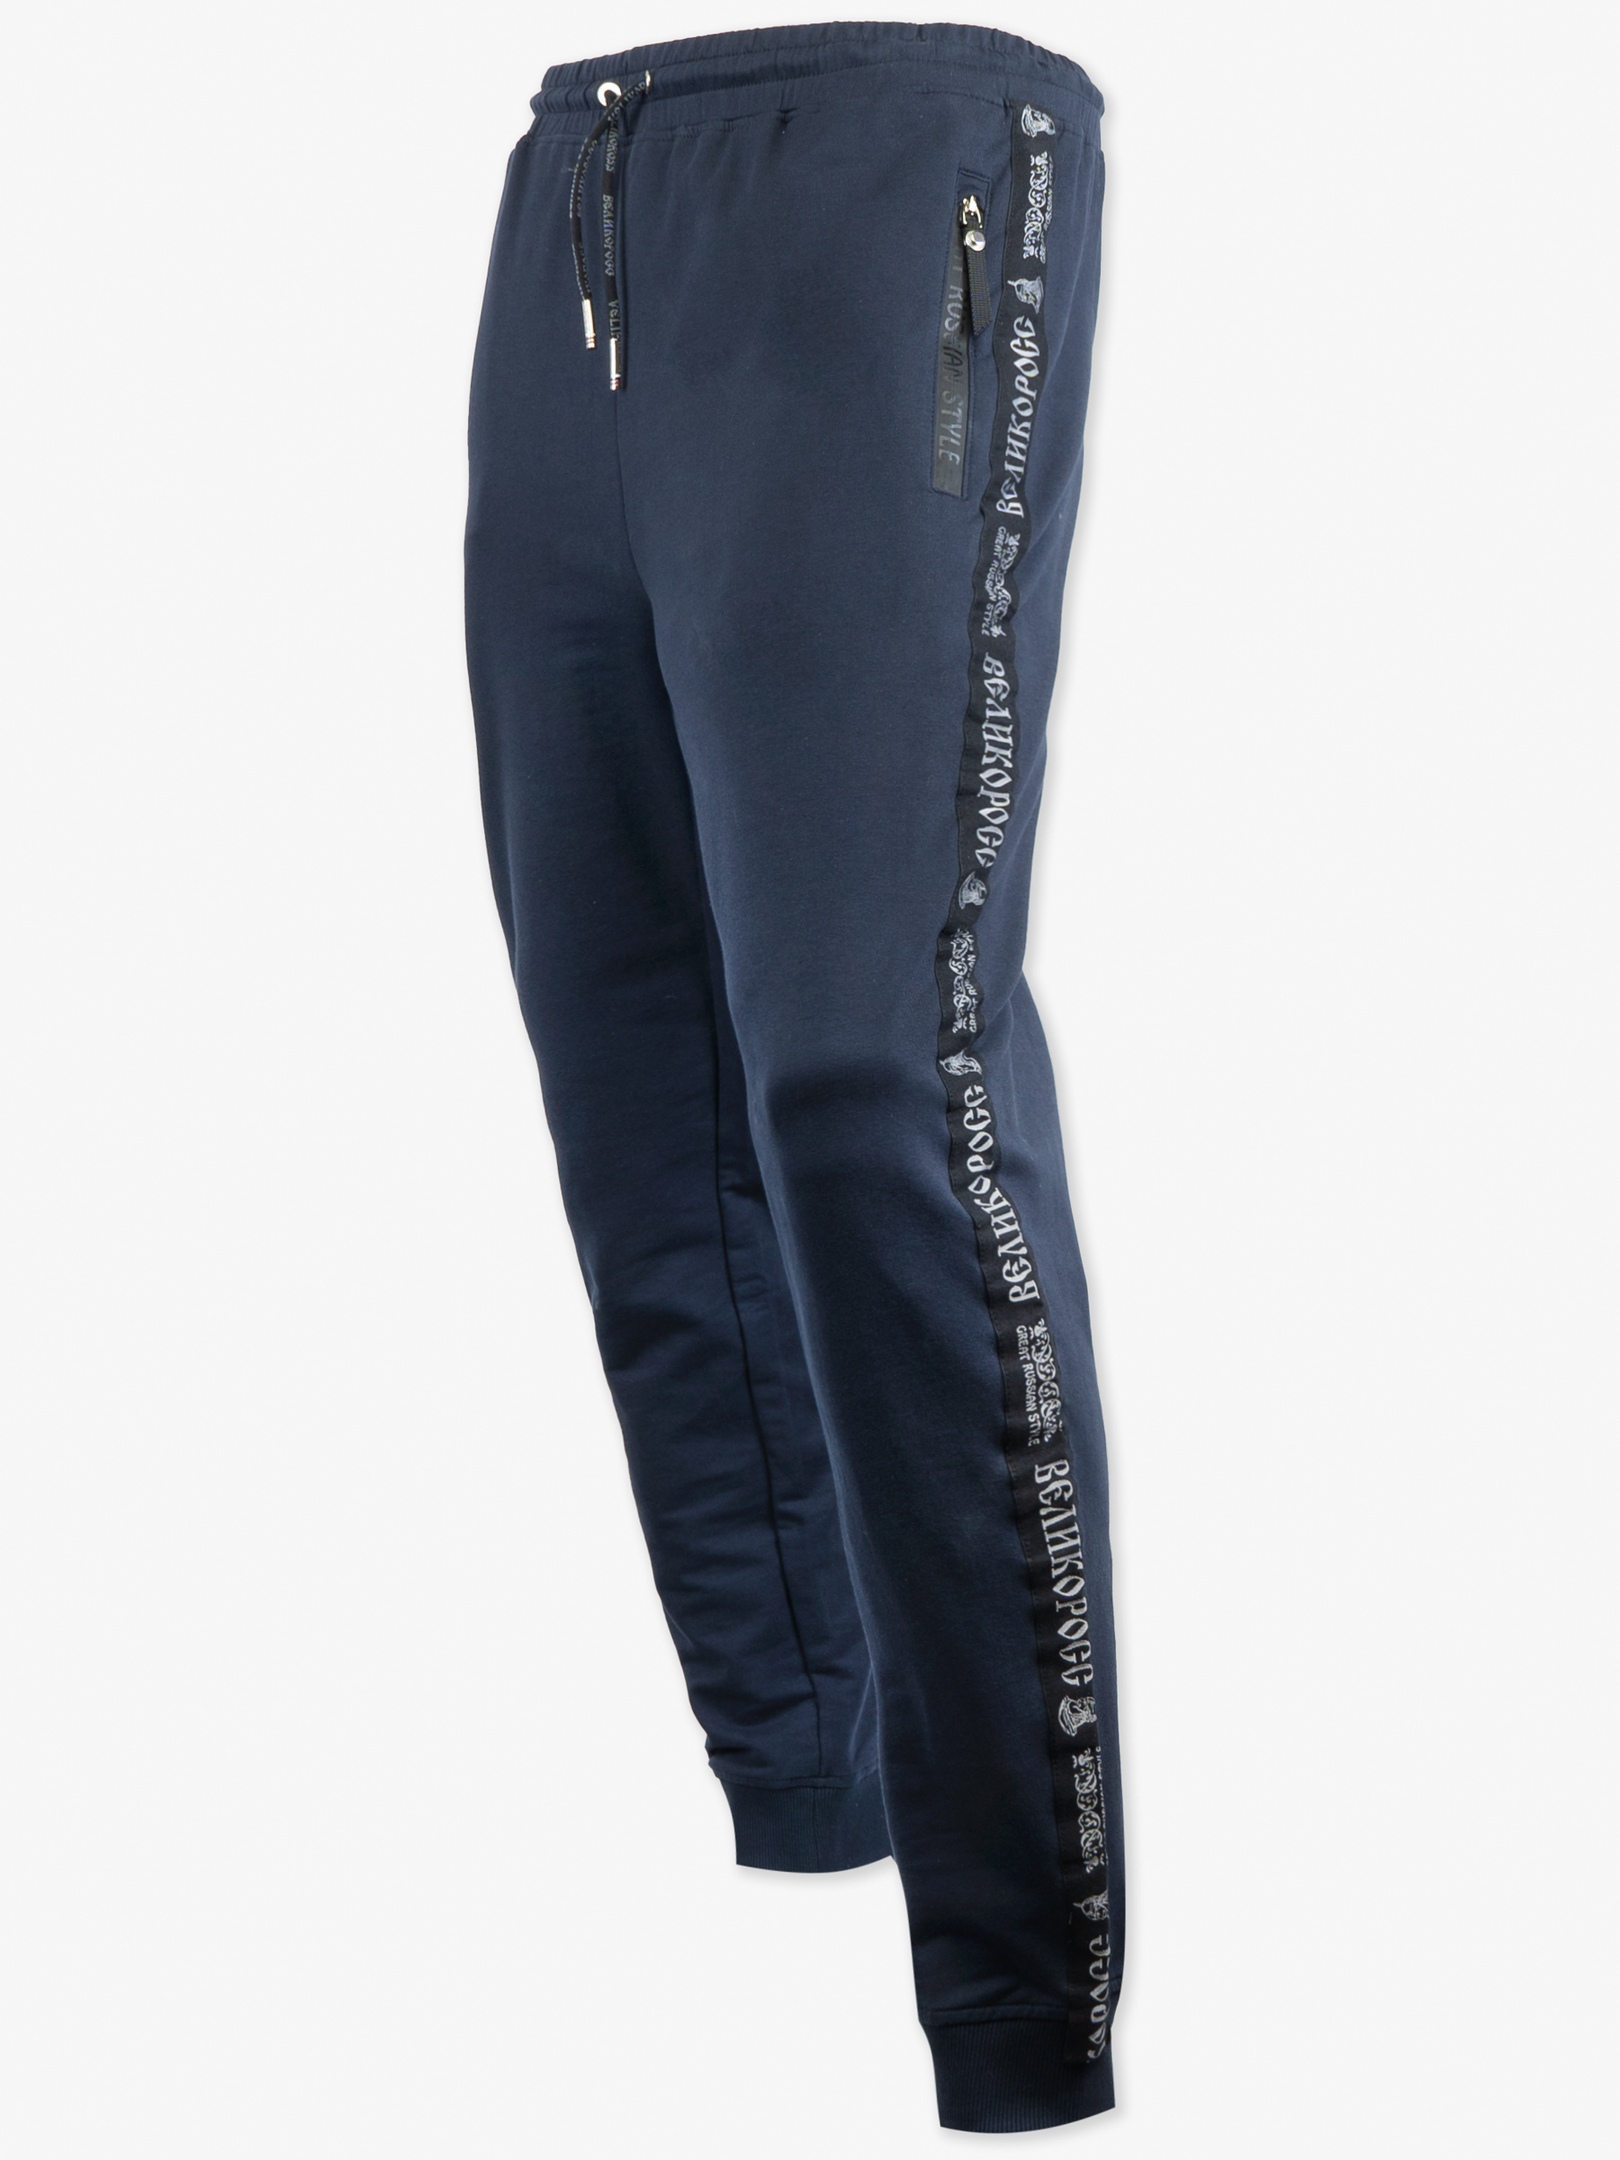 Спортивные брюки мужские Великоросс 9 синие 58 RU